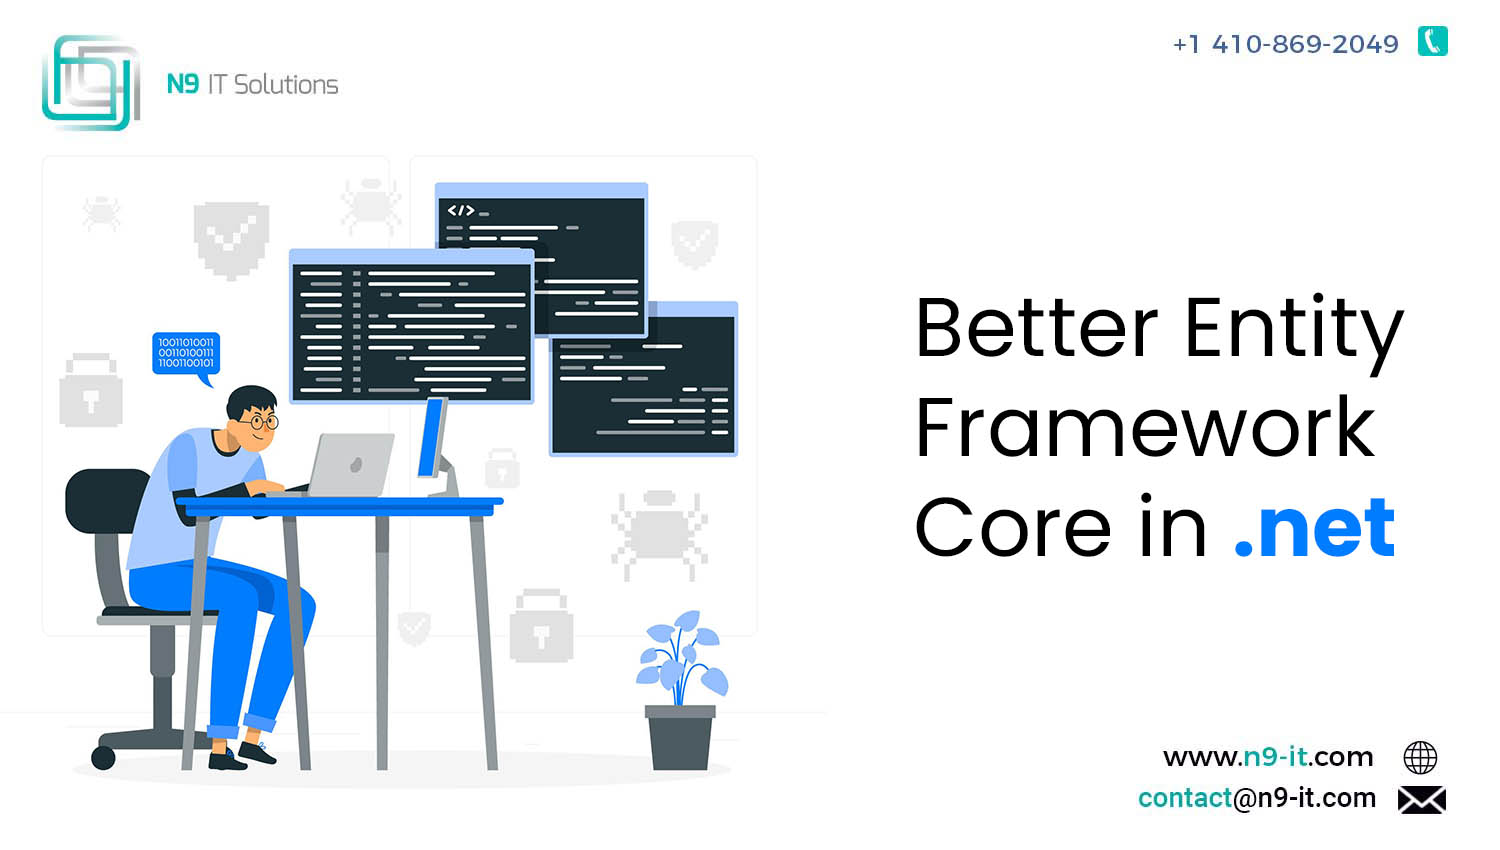 Better Entity Framework Core in .net